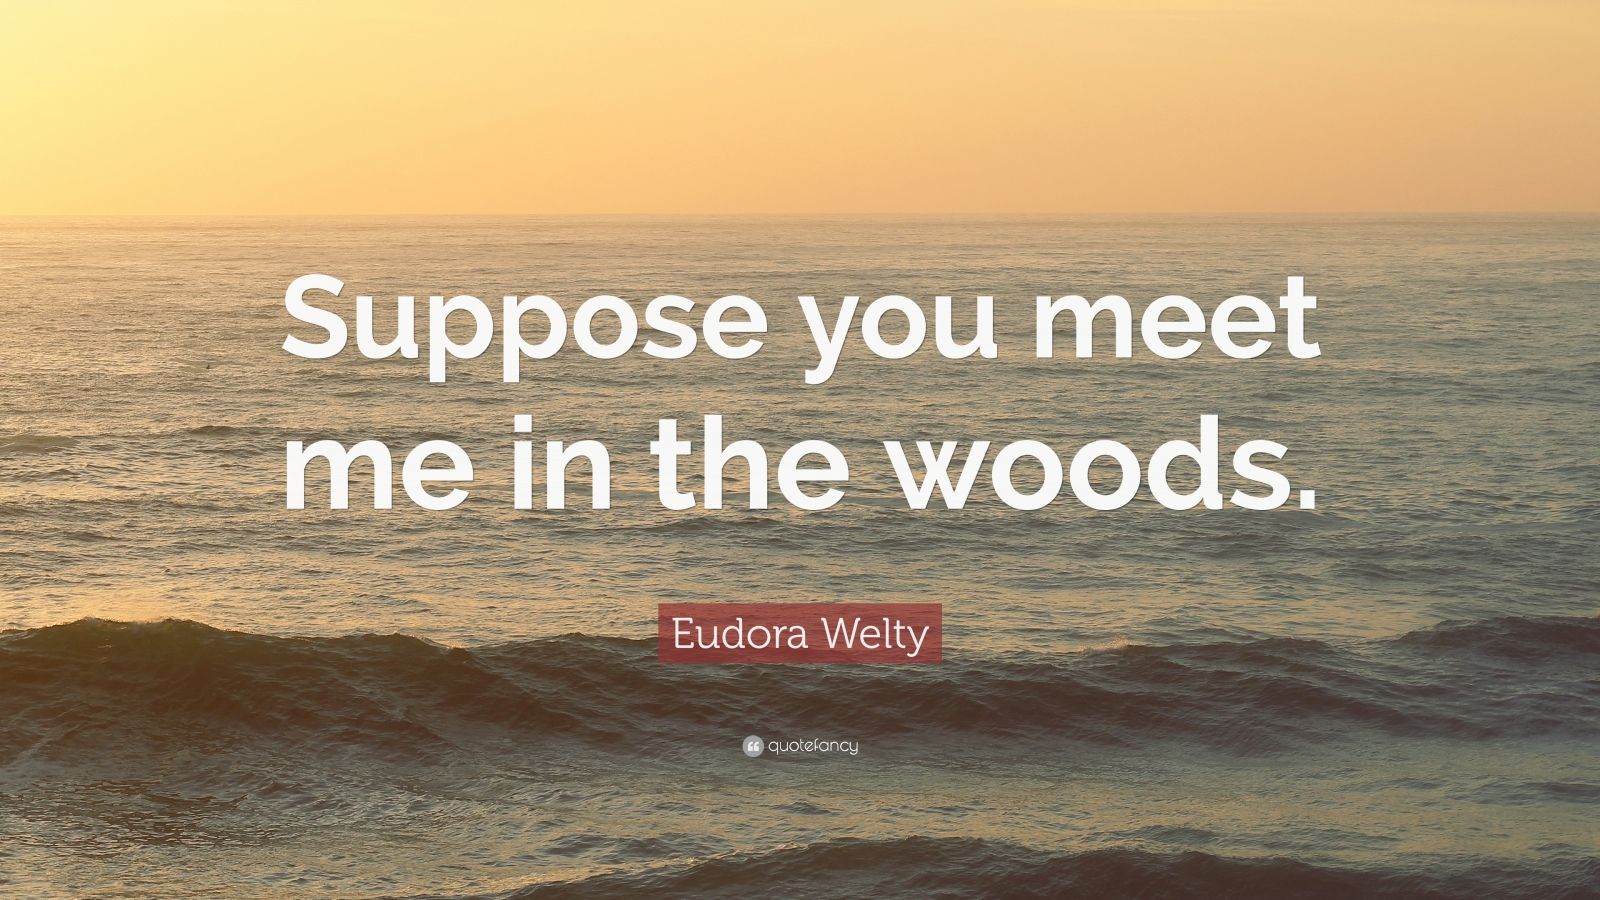 eudora welty quote